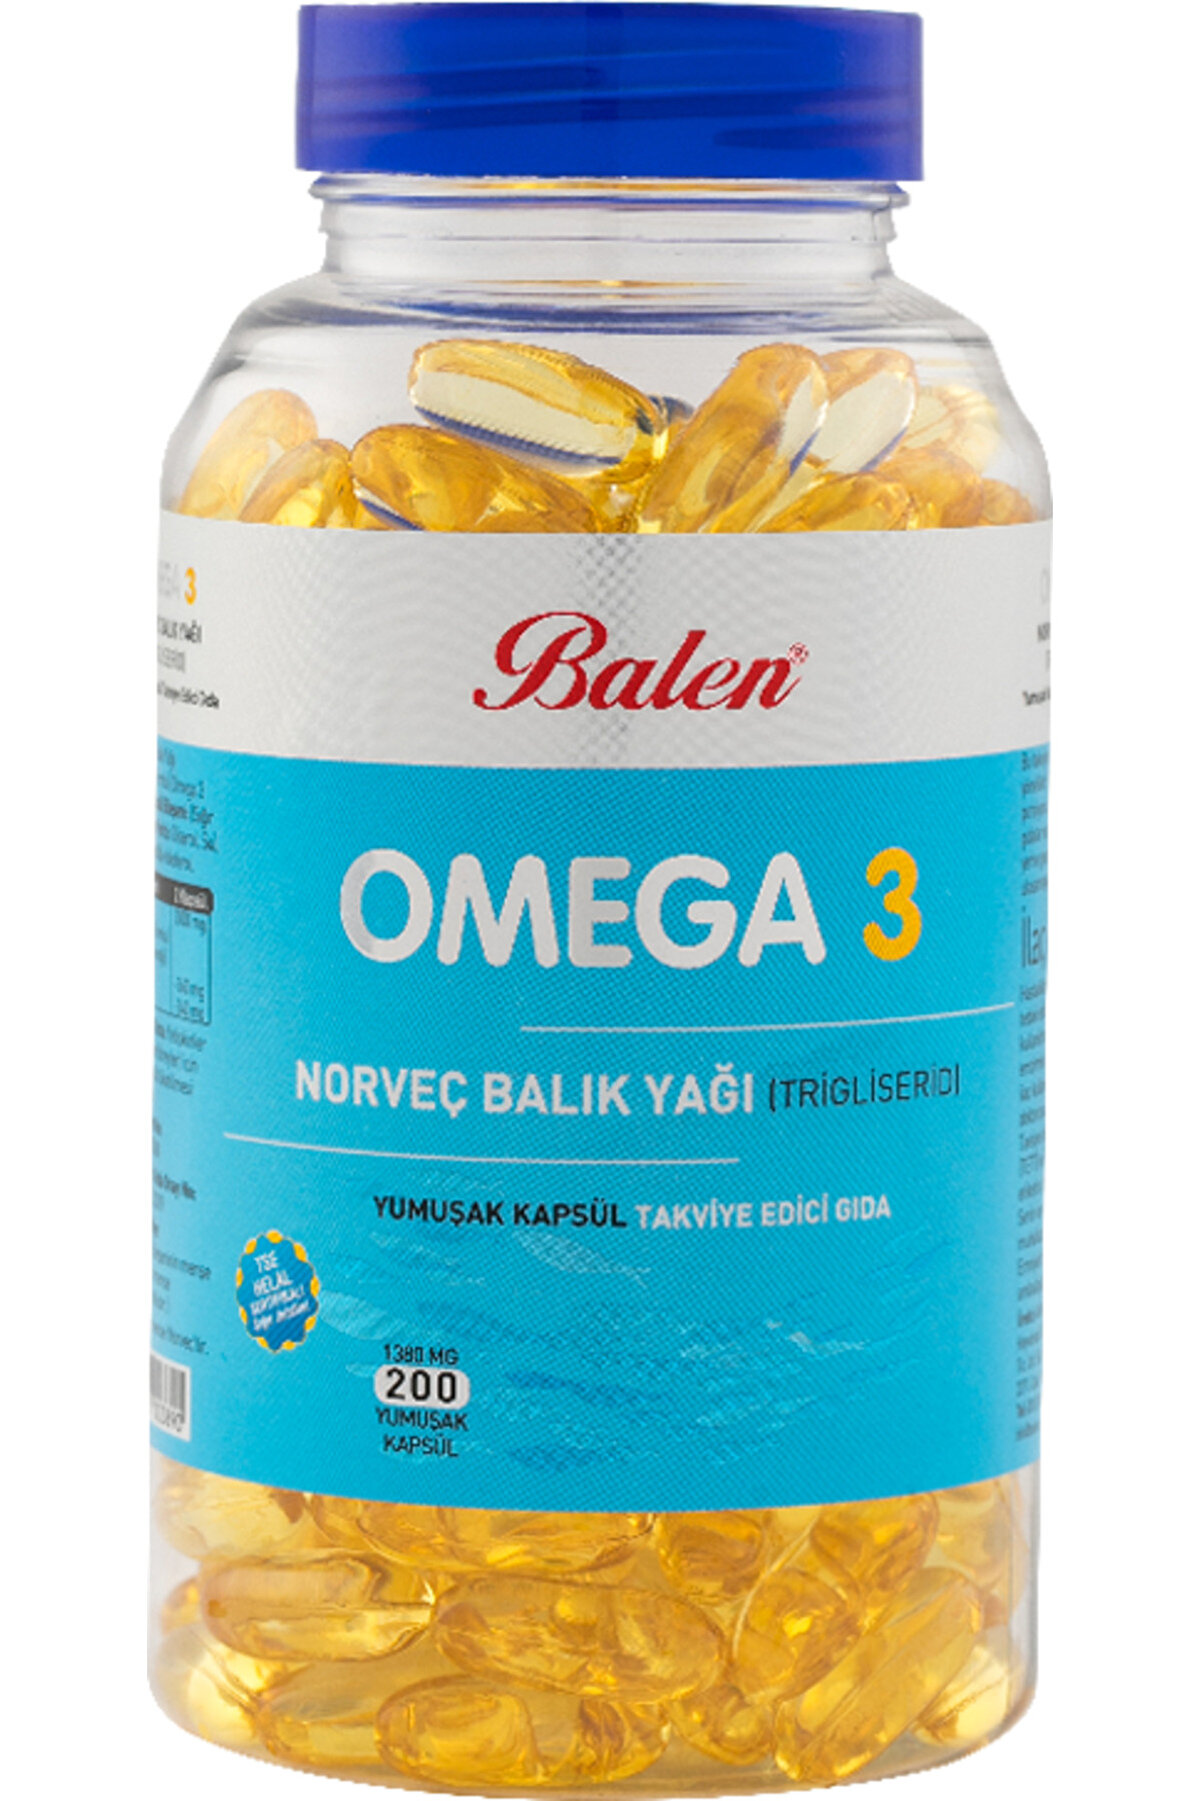 Balen Omega 3 Norveç Balık Yağı (trigiliserid) Yumuşak Kapsül 1380 Mg*200